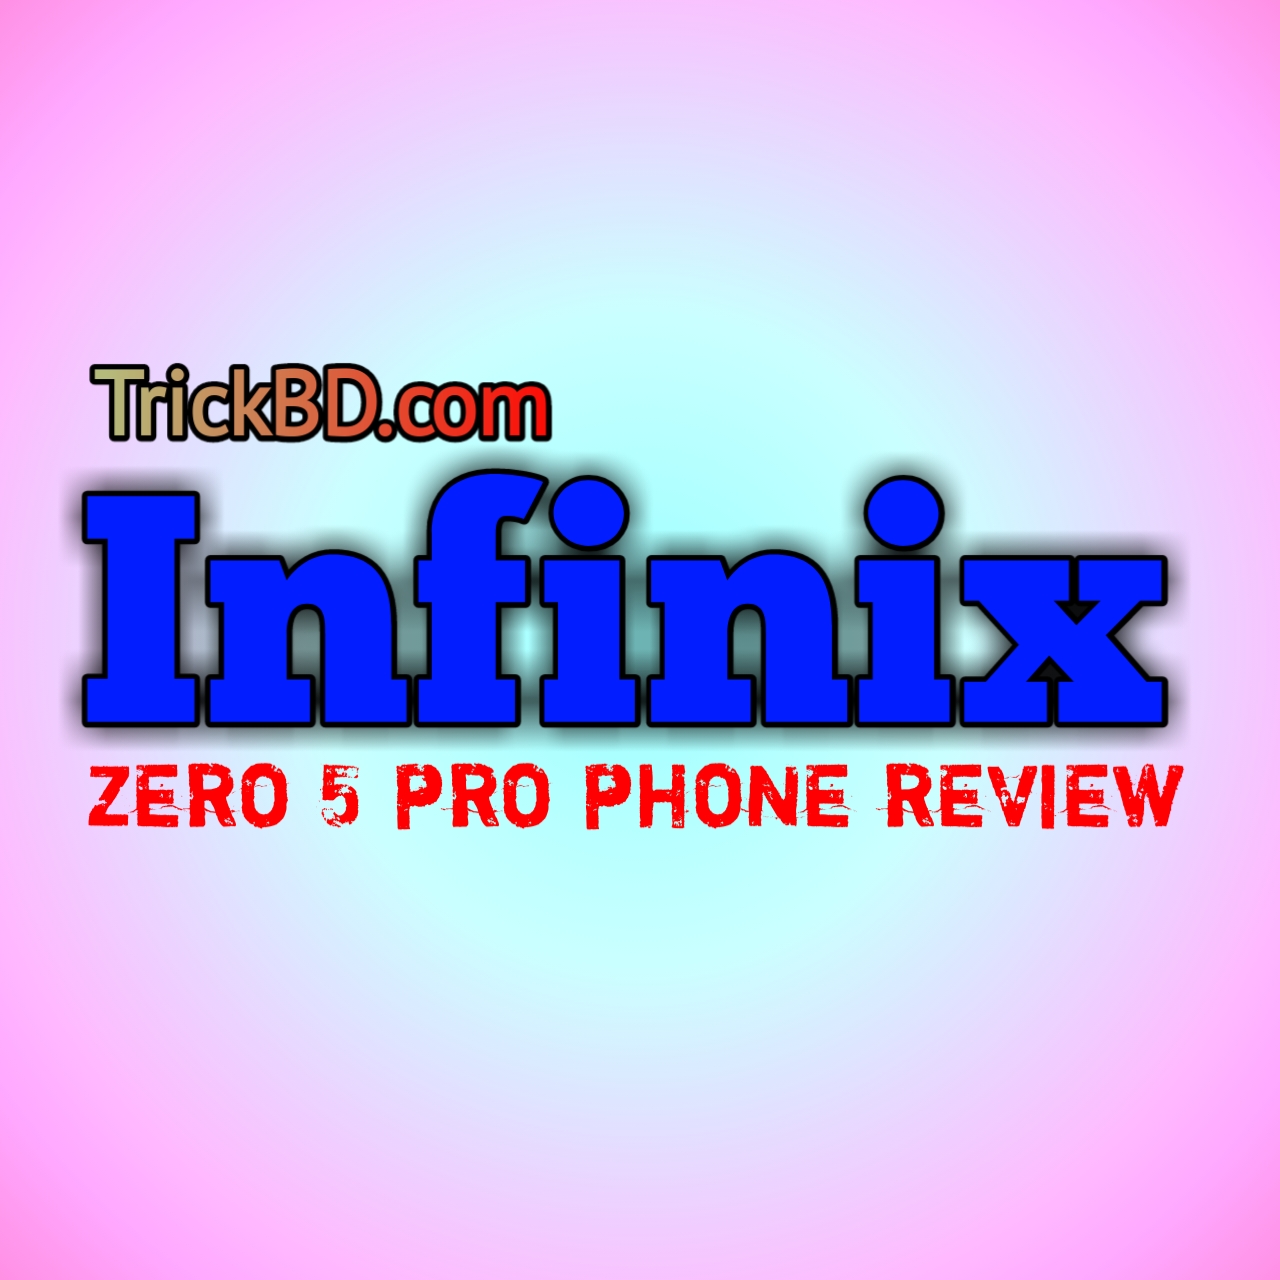 [ব্যবসা-17] একনজরে দেখে নিন infinix zero 5 pro phone review